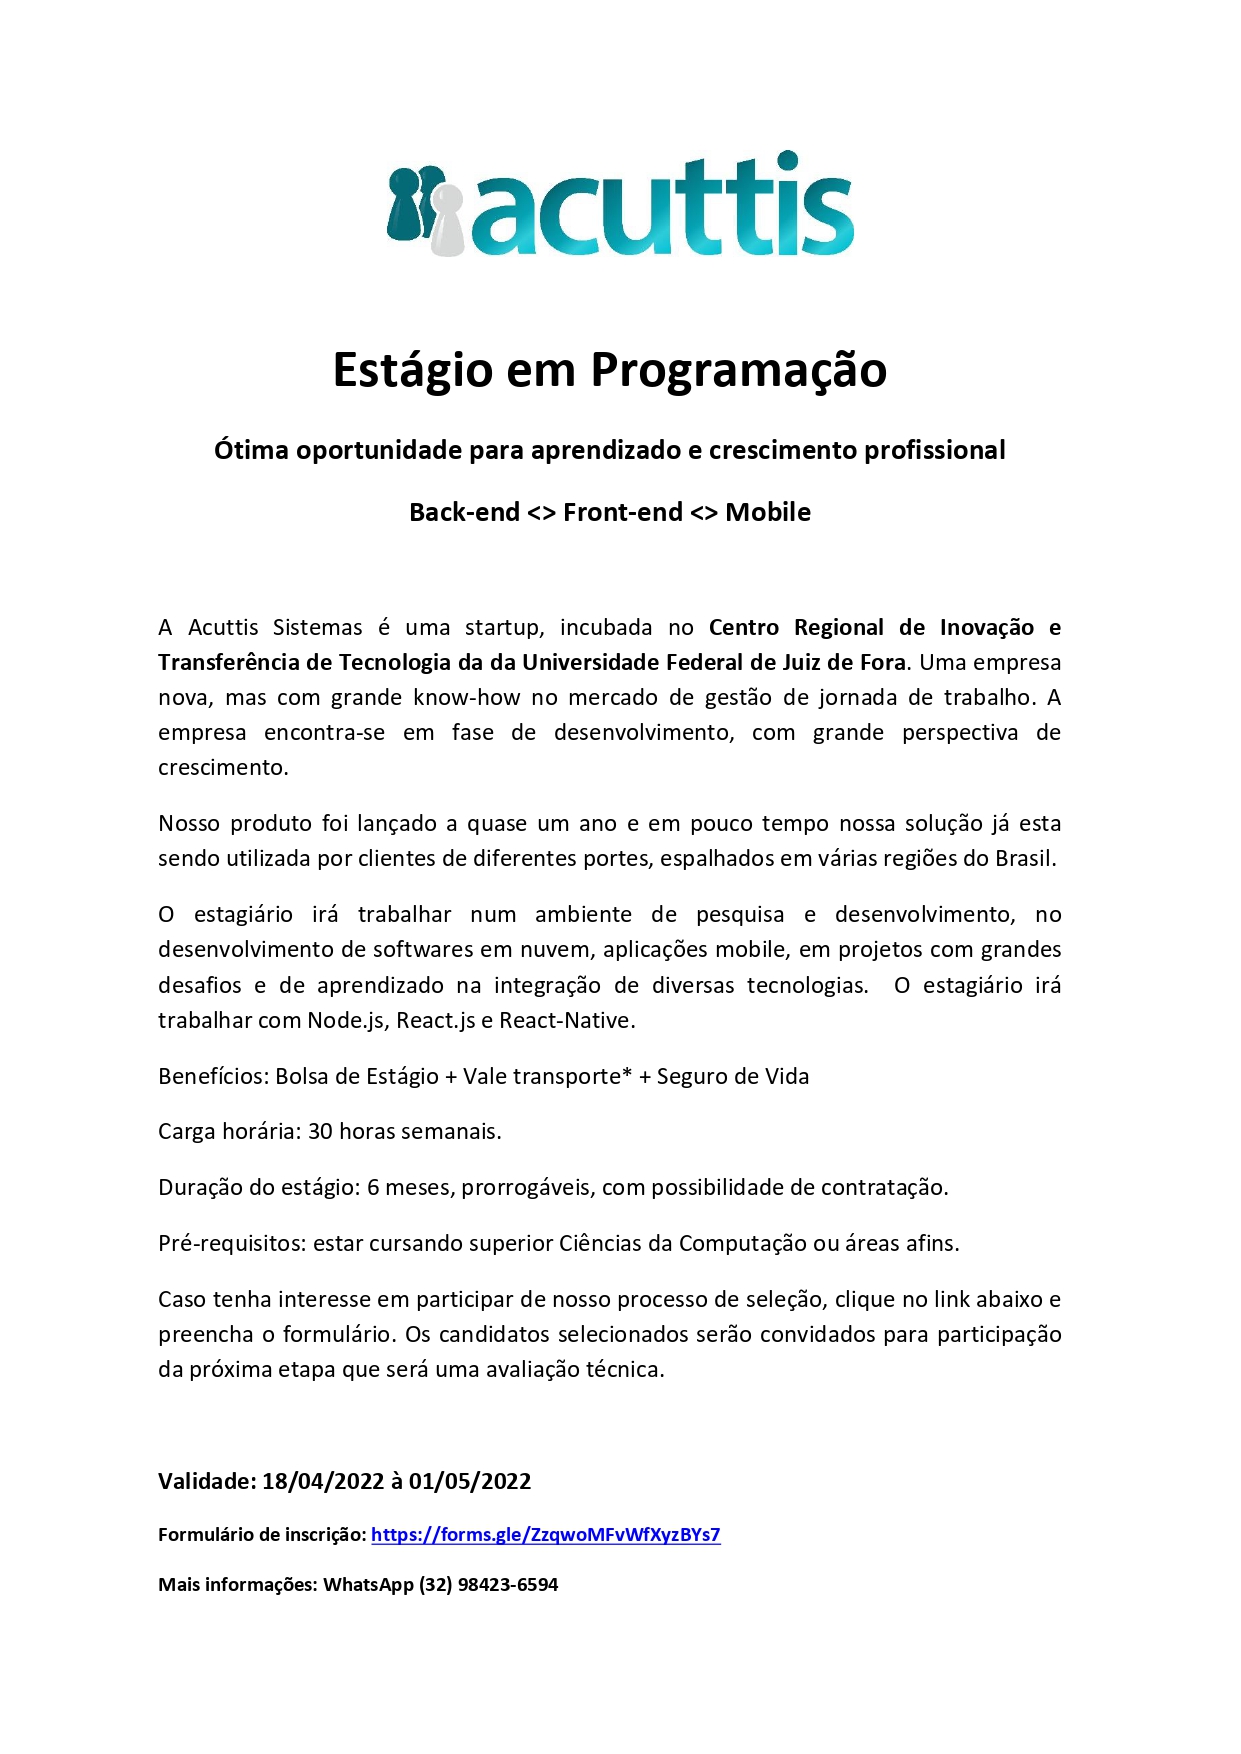 Anúncio Seleção Estagio 202204_page-0001